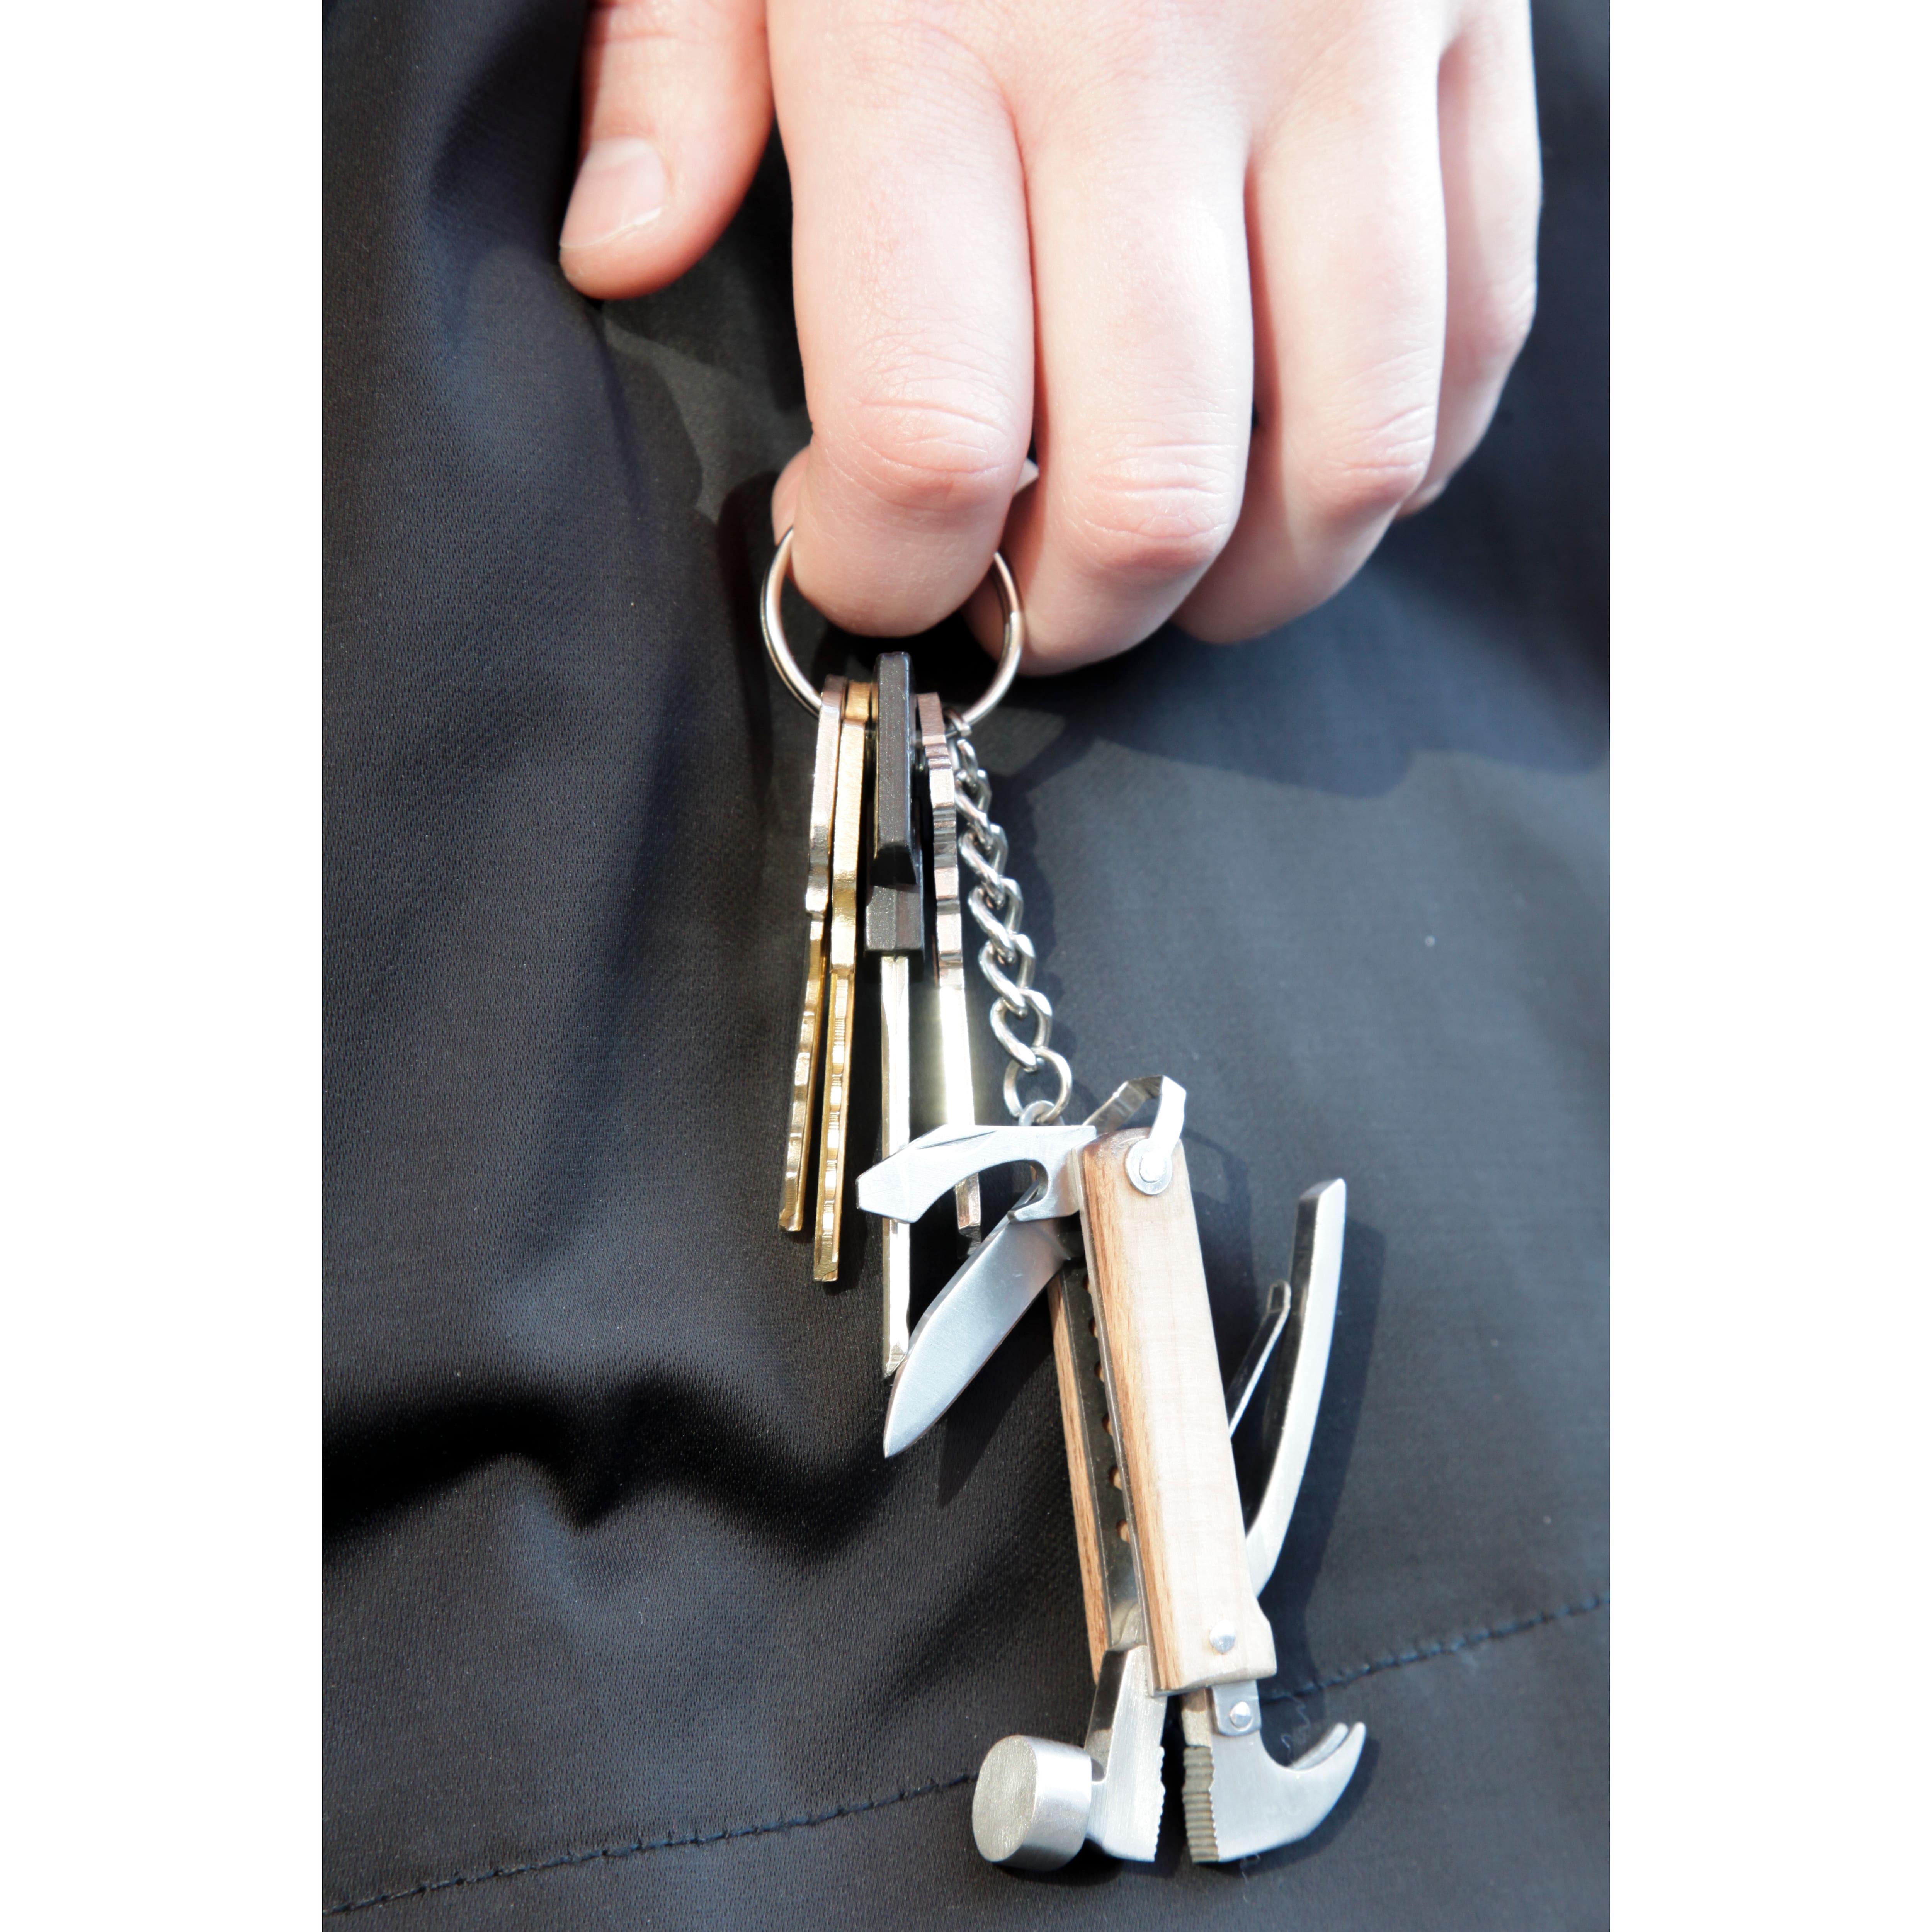 Kikkerland® Wooden Mini Hammer Keyring Tool